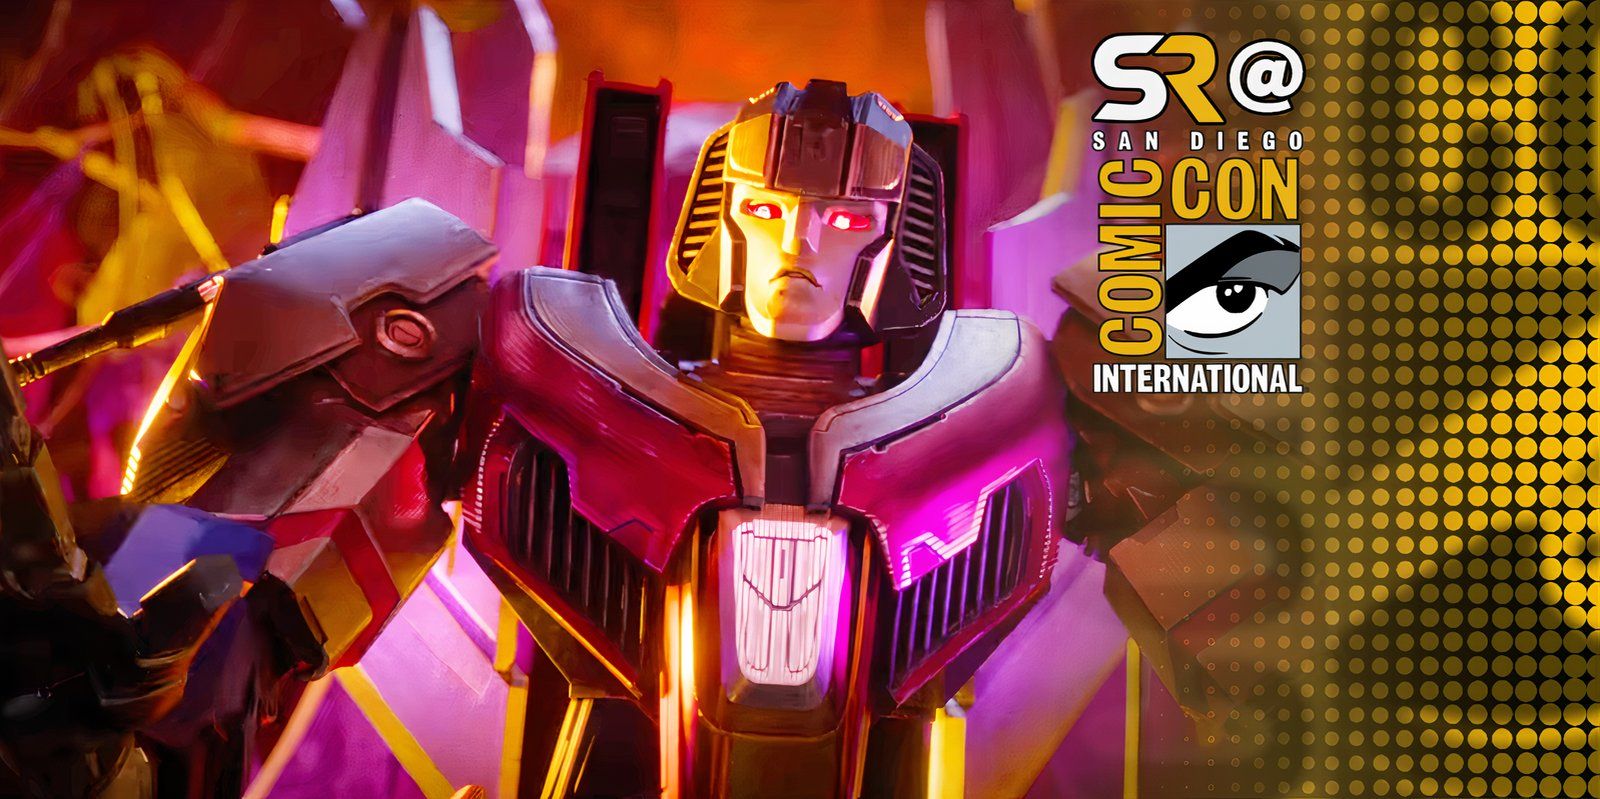 Transformers One confirma a Starscream como el villano principal y revela al nuevo actor de voz de los Decepticons